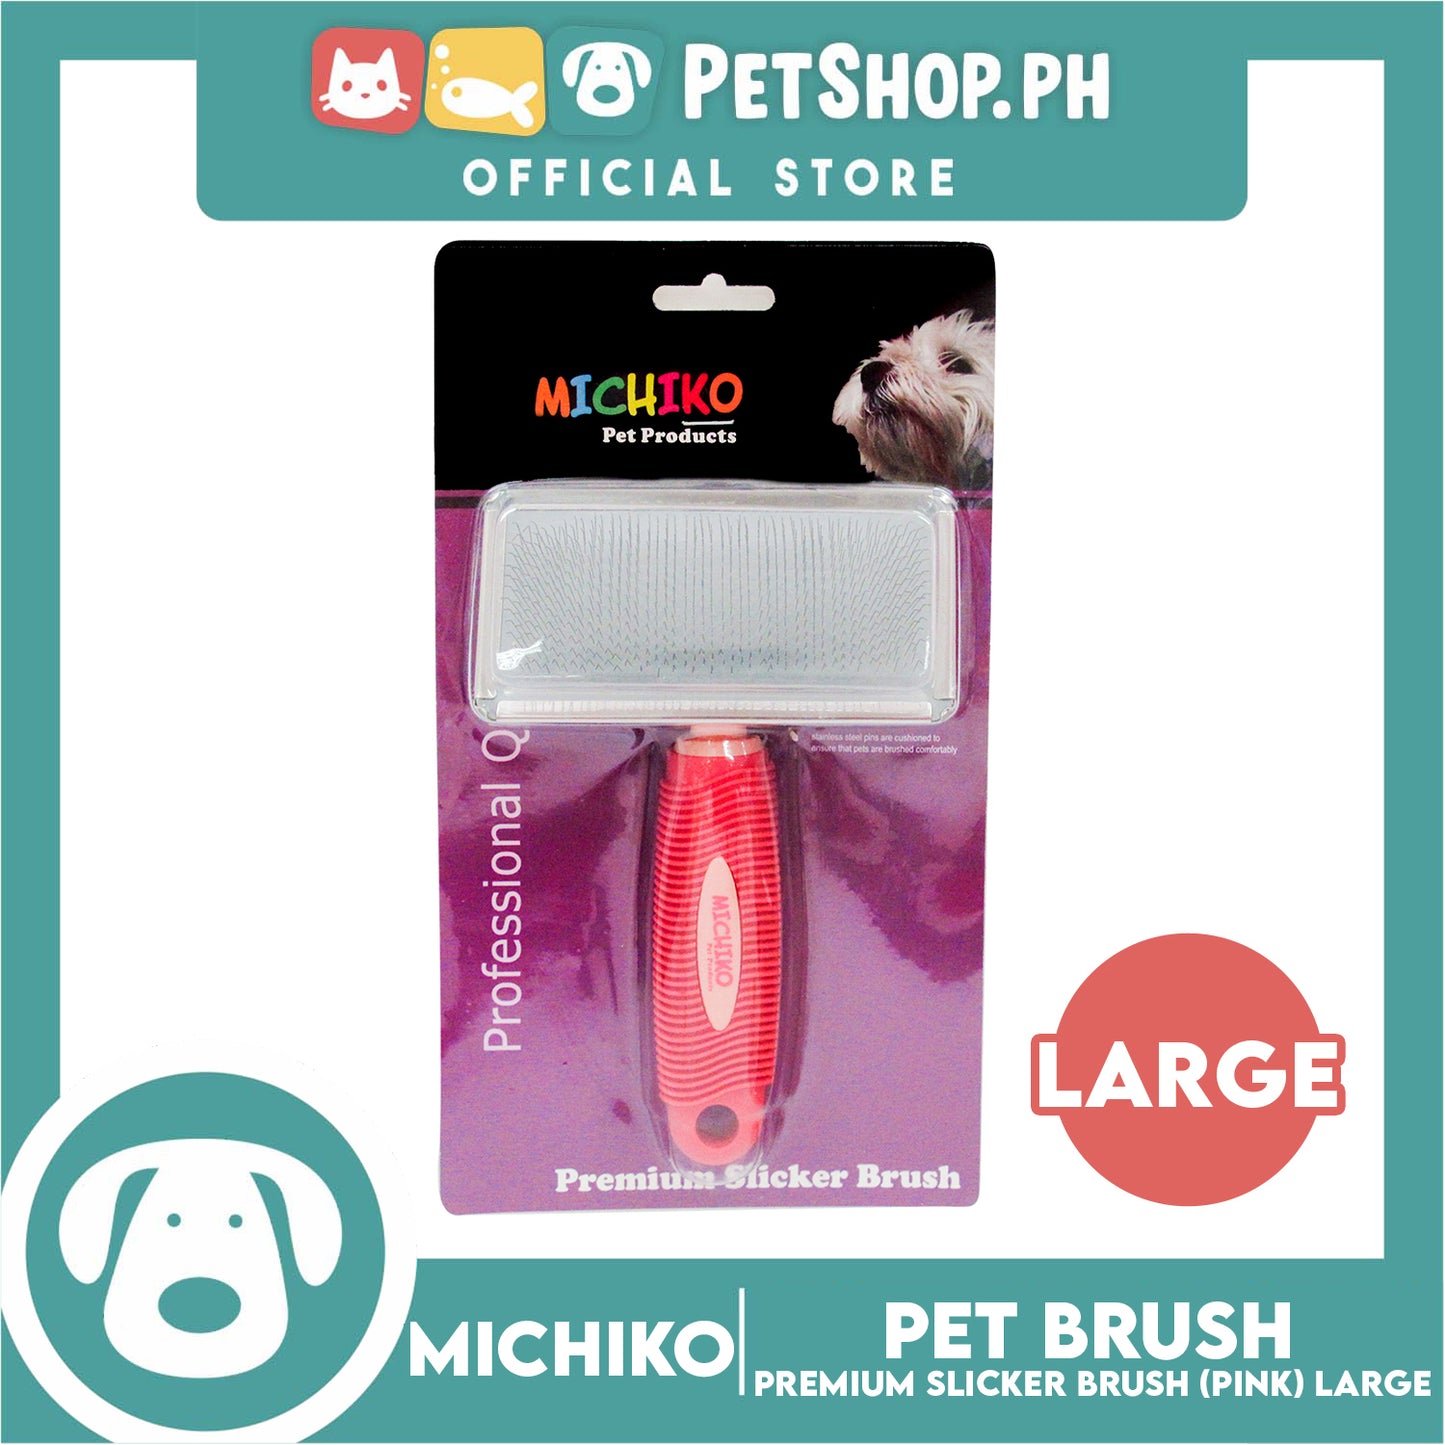 Michiko Premium Slicker Brush Pink Color (Large) Pet Brush, Pet Grooming